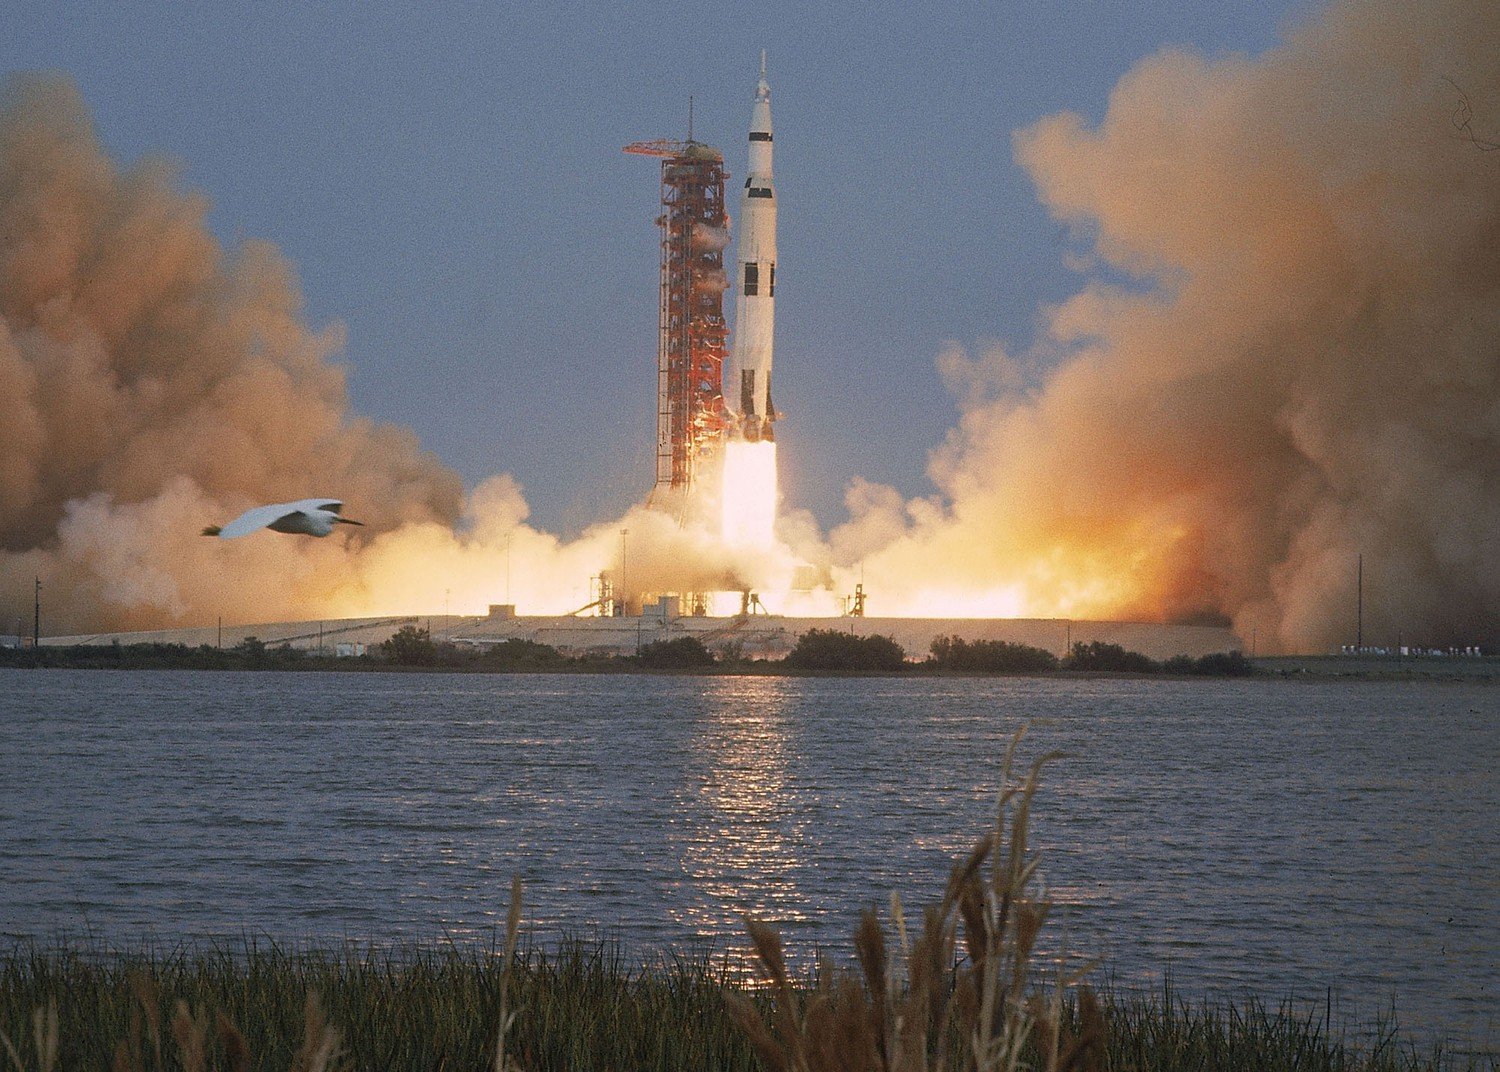 Hơn 13h ngày 11/4/1970, tên lửa Saturn V khởi động đưa tàu vũ trụ Apollo 13 rời bệ phóng, đi vào quỹ đạo với mục tiêu chinh phục Mặt trăng.